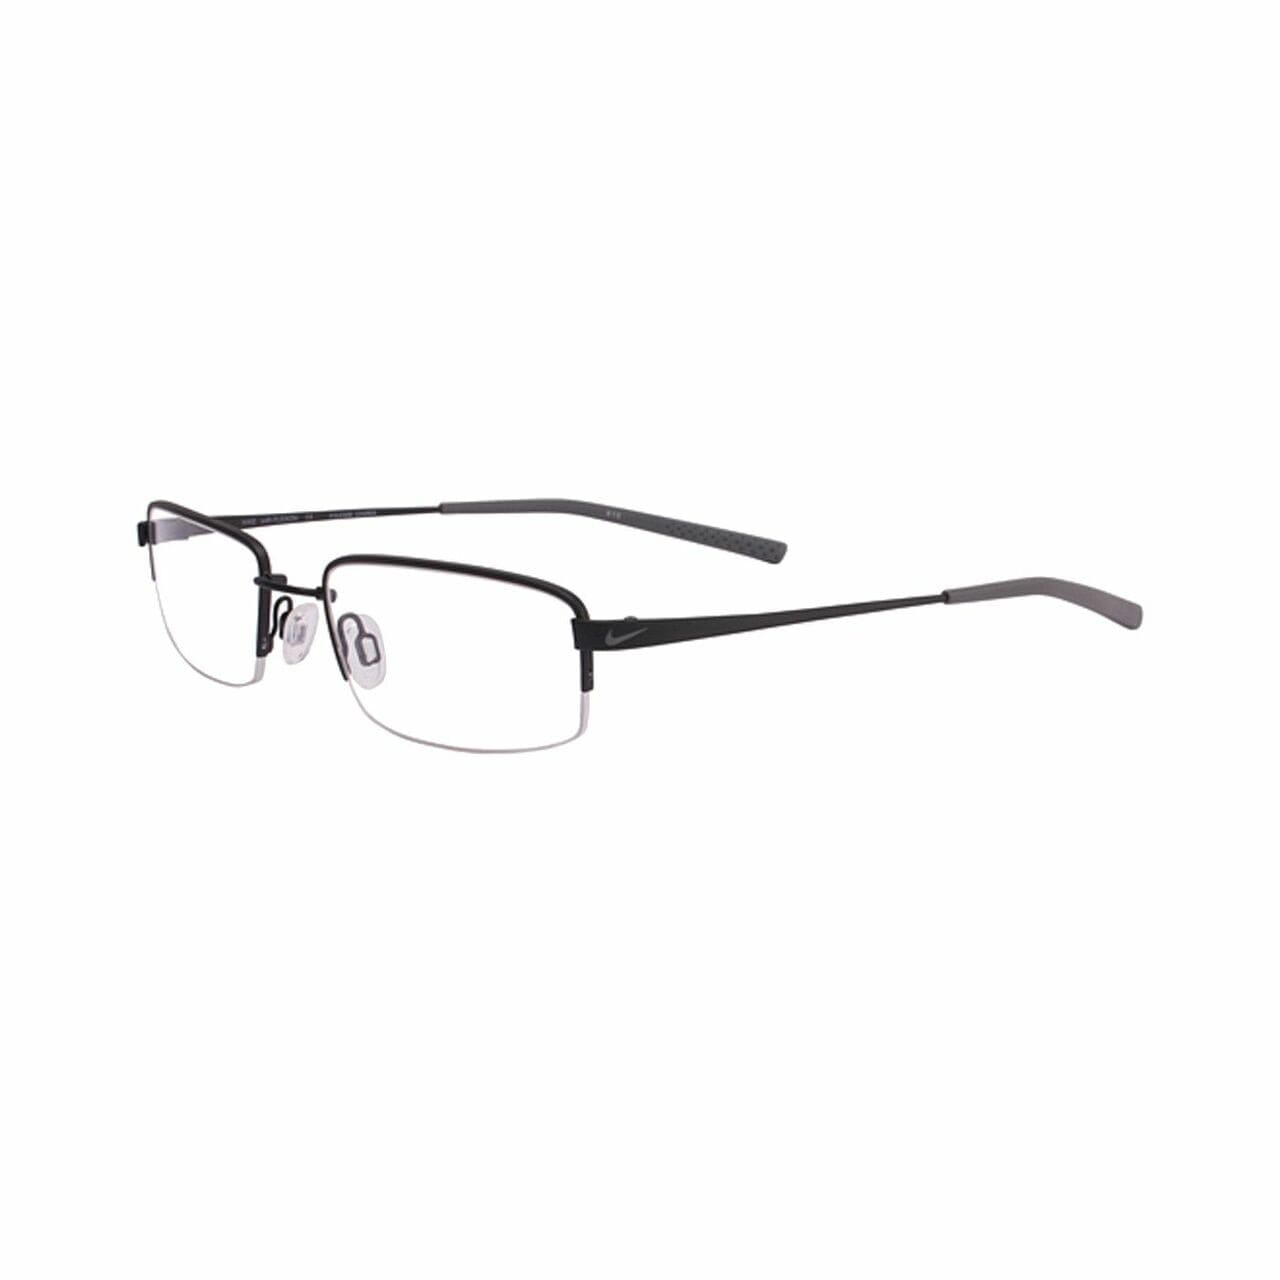 Nike 4192-007 Black Chrome Rectangular Men's Metal Eyeglasses 708129368376